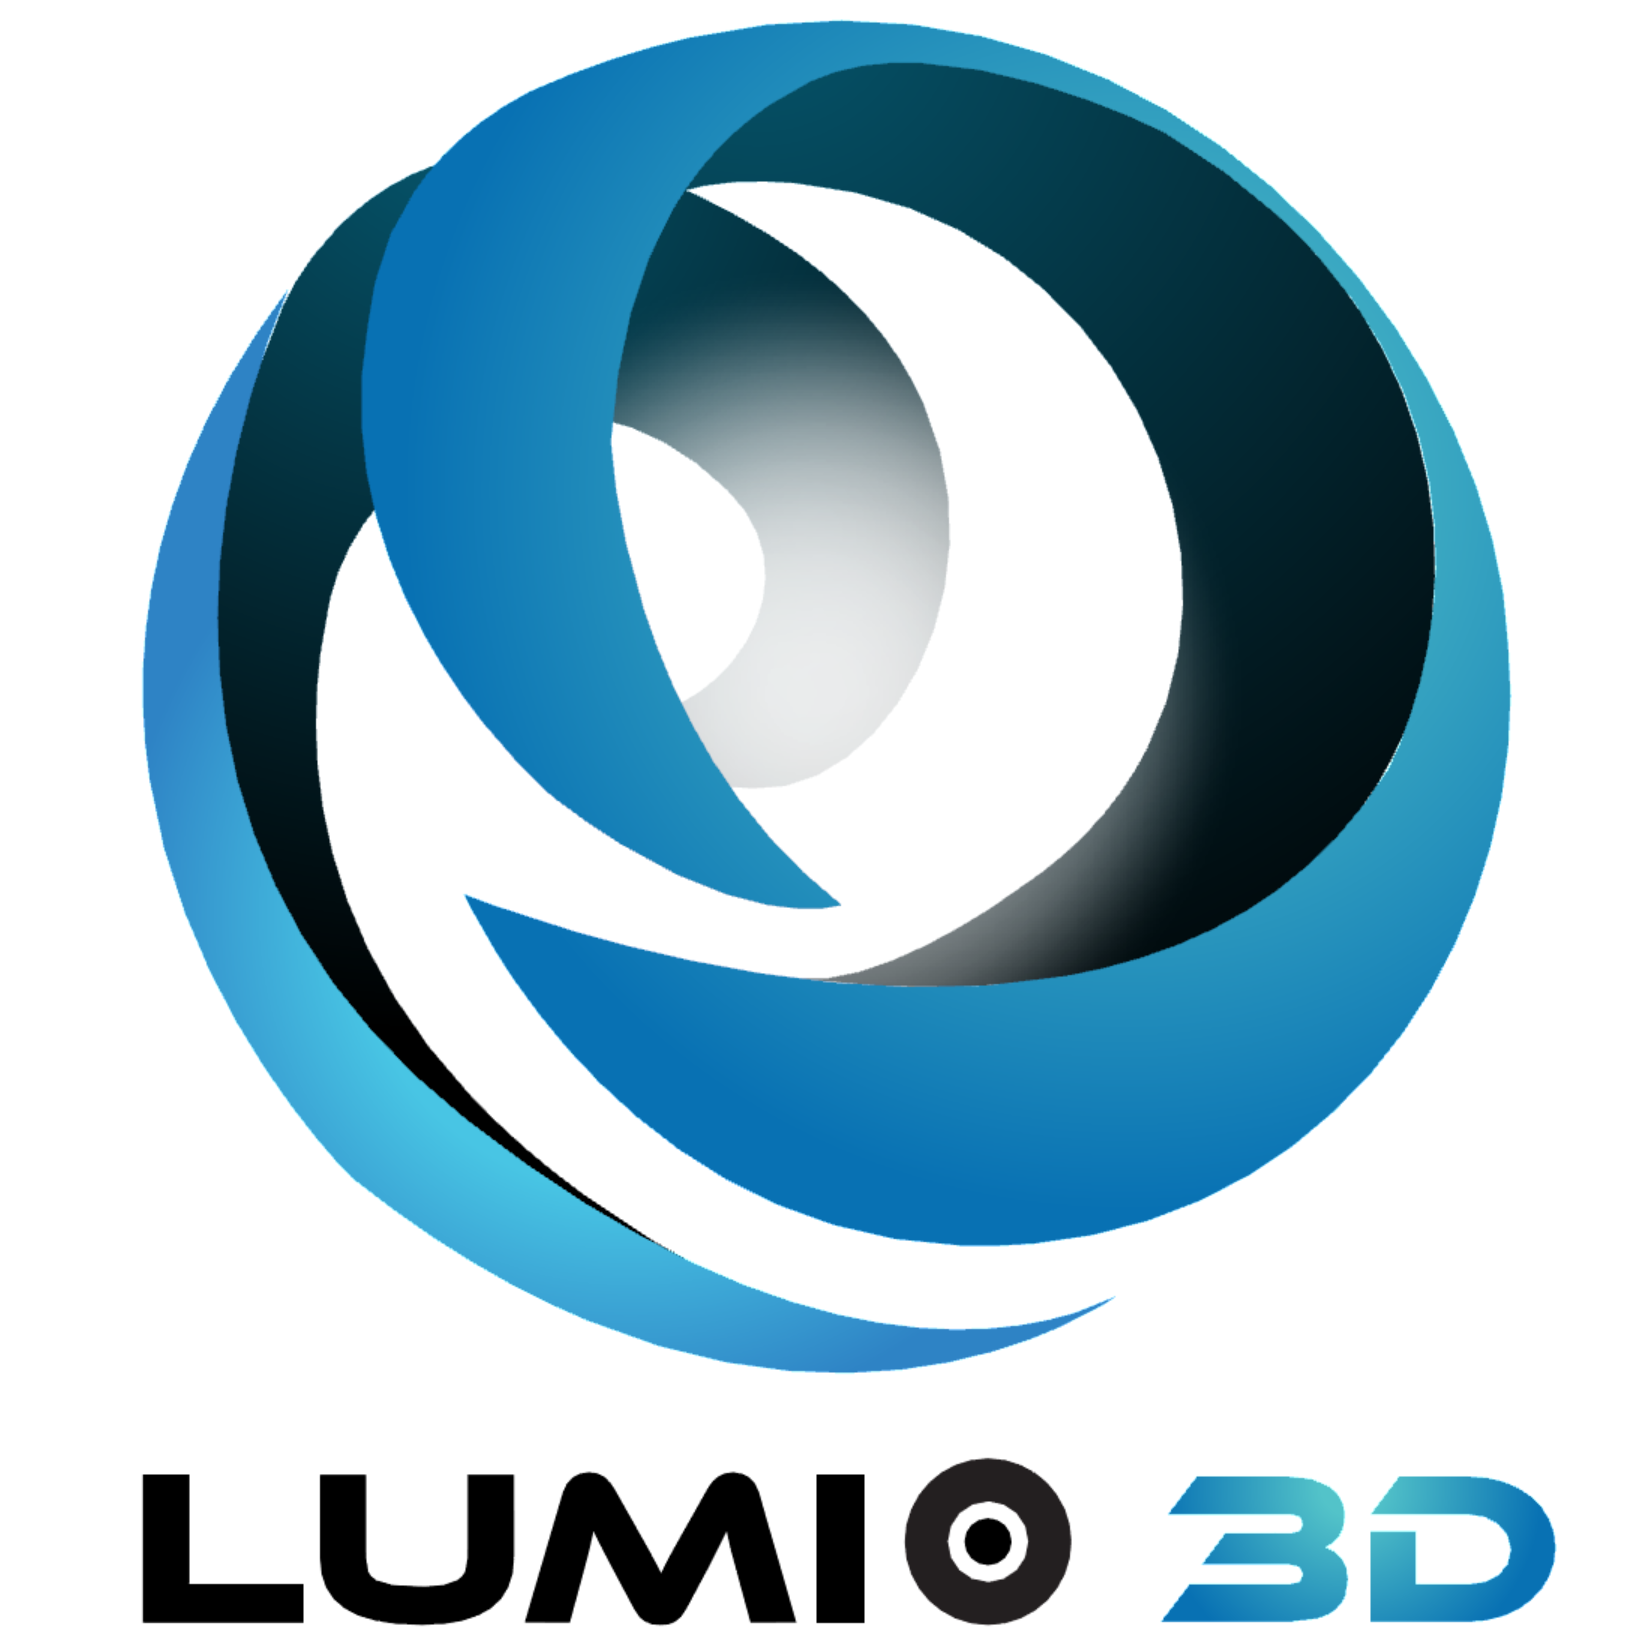 บริษัท ลูมิโอ ทรีดี จำกัด logo โลโก้